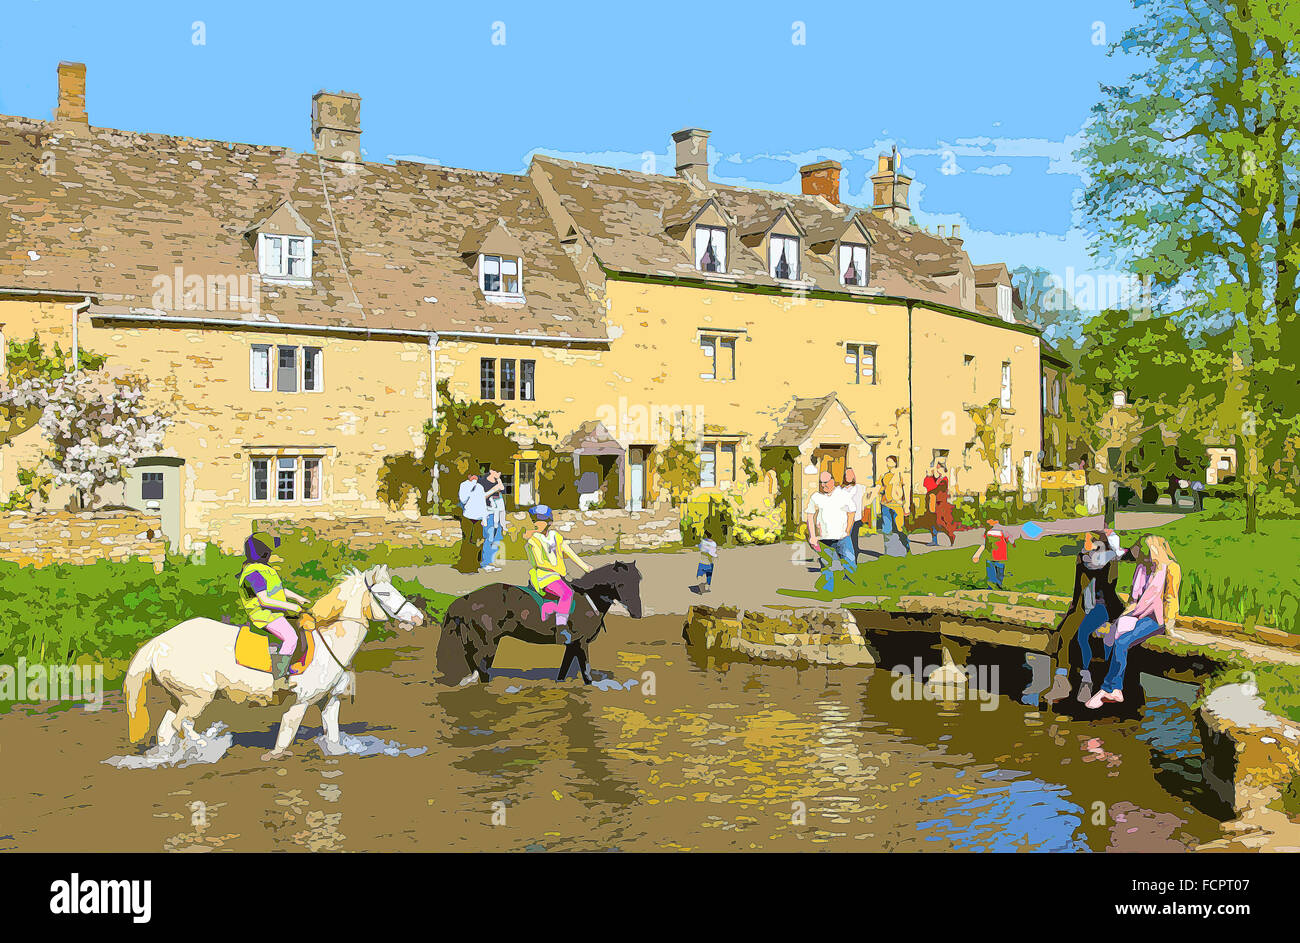 Ein Plakat Stil Illustration aus einem Foto von Cotswold Dorf Lower Slaughter, Gloucestershire, England, UK Stockfoto